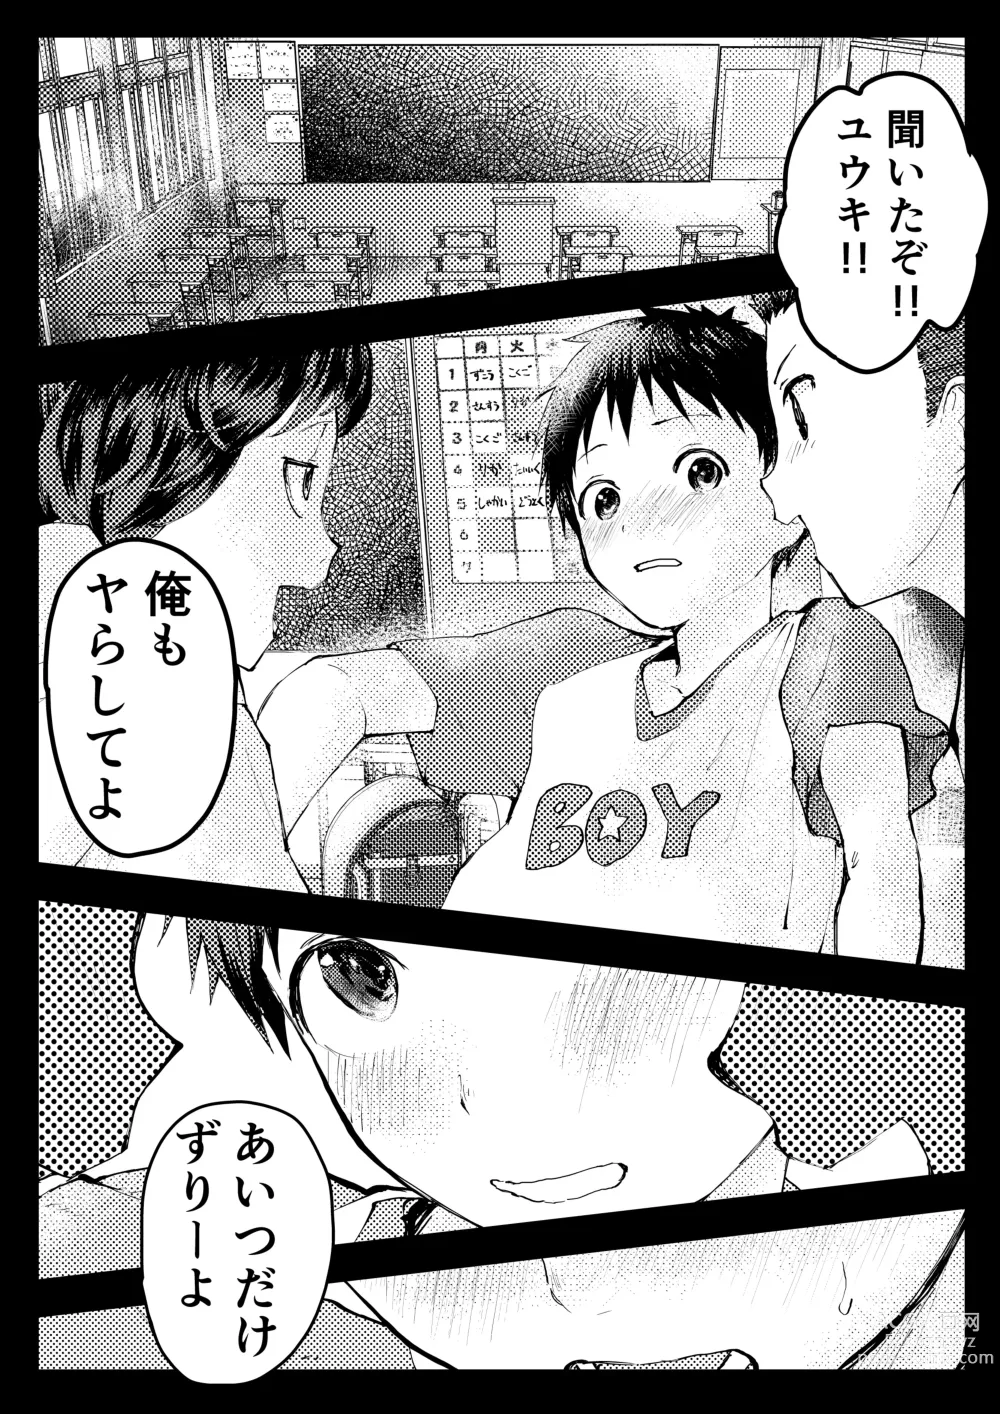 Page 48 of doujinshi Tomodachi Ecchi